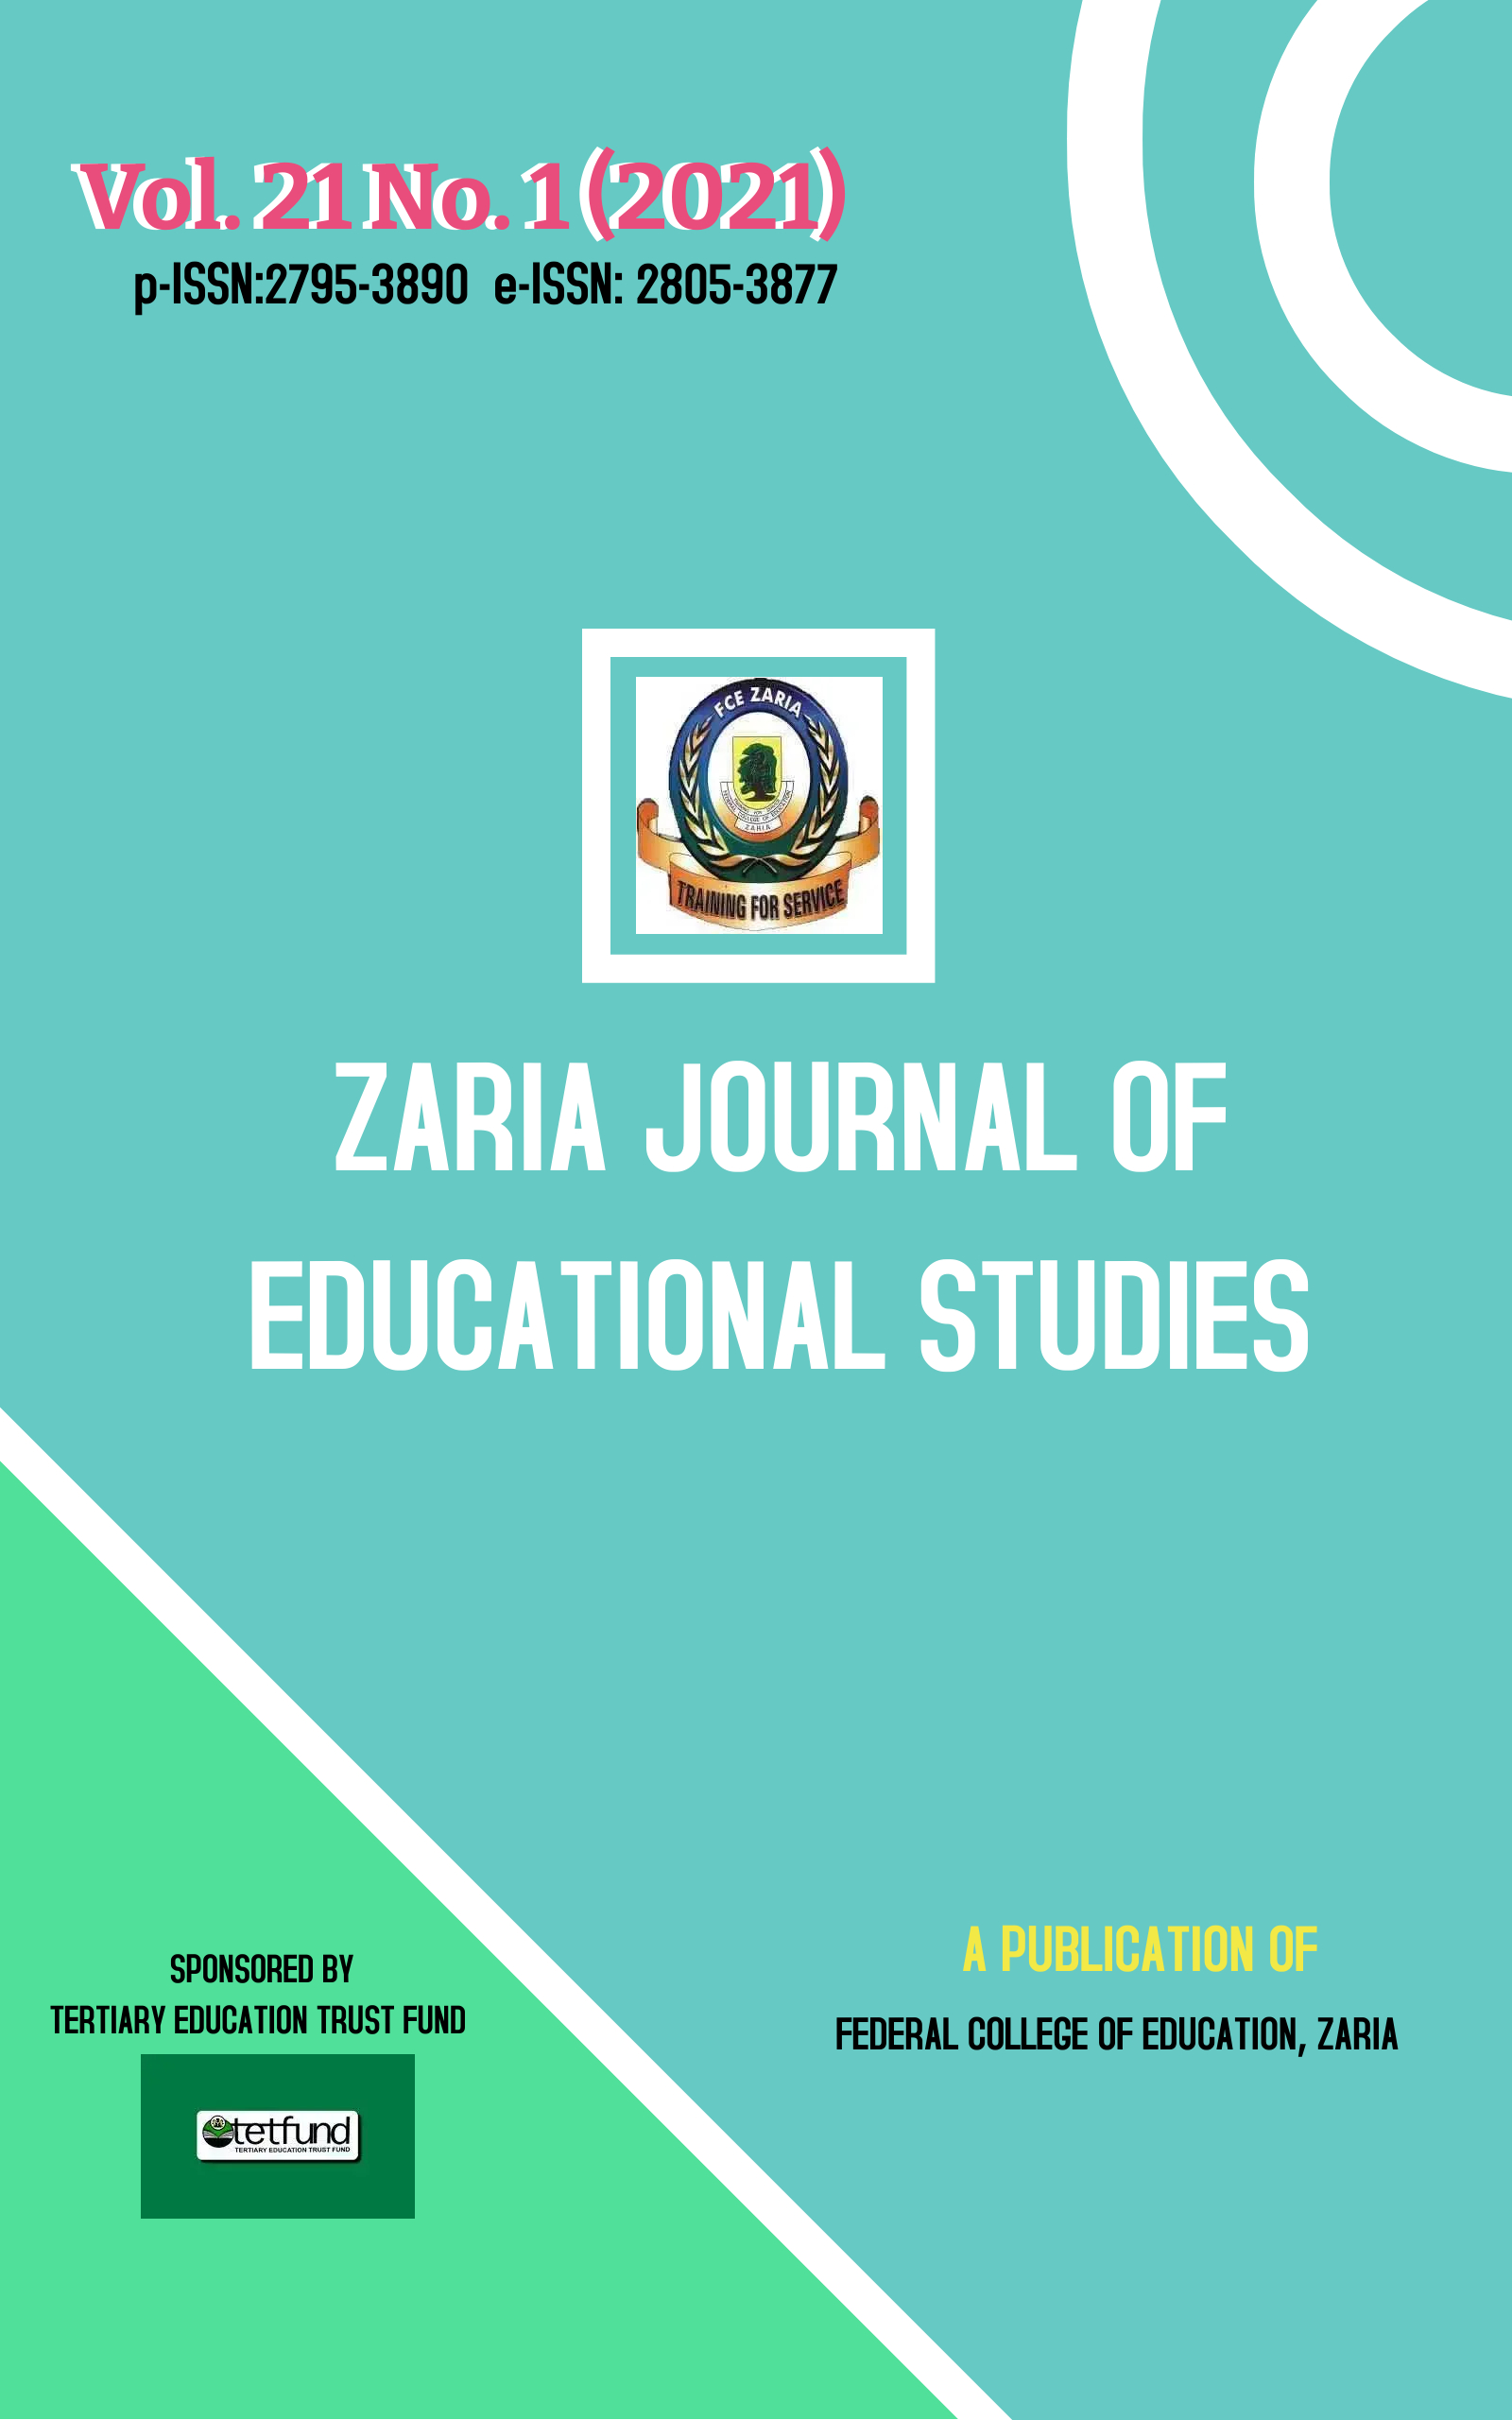 Zaria Journal of Educational Studies, ZAJES